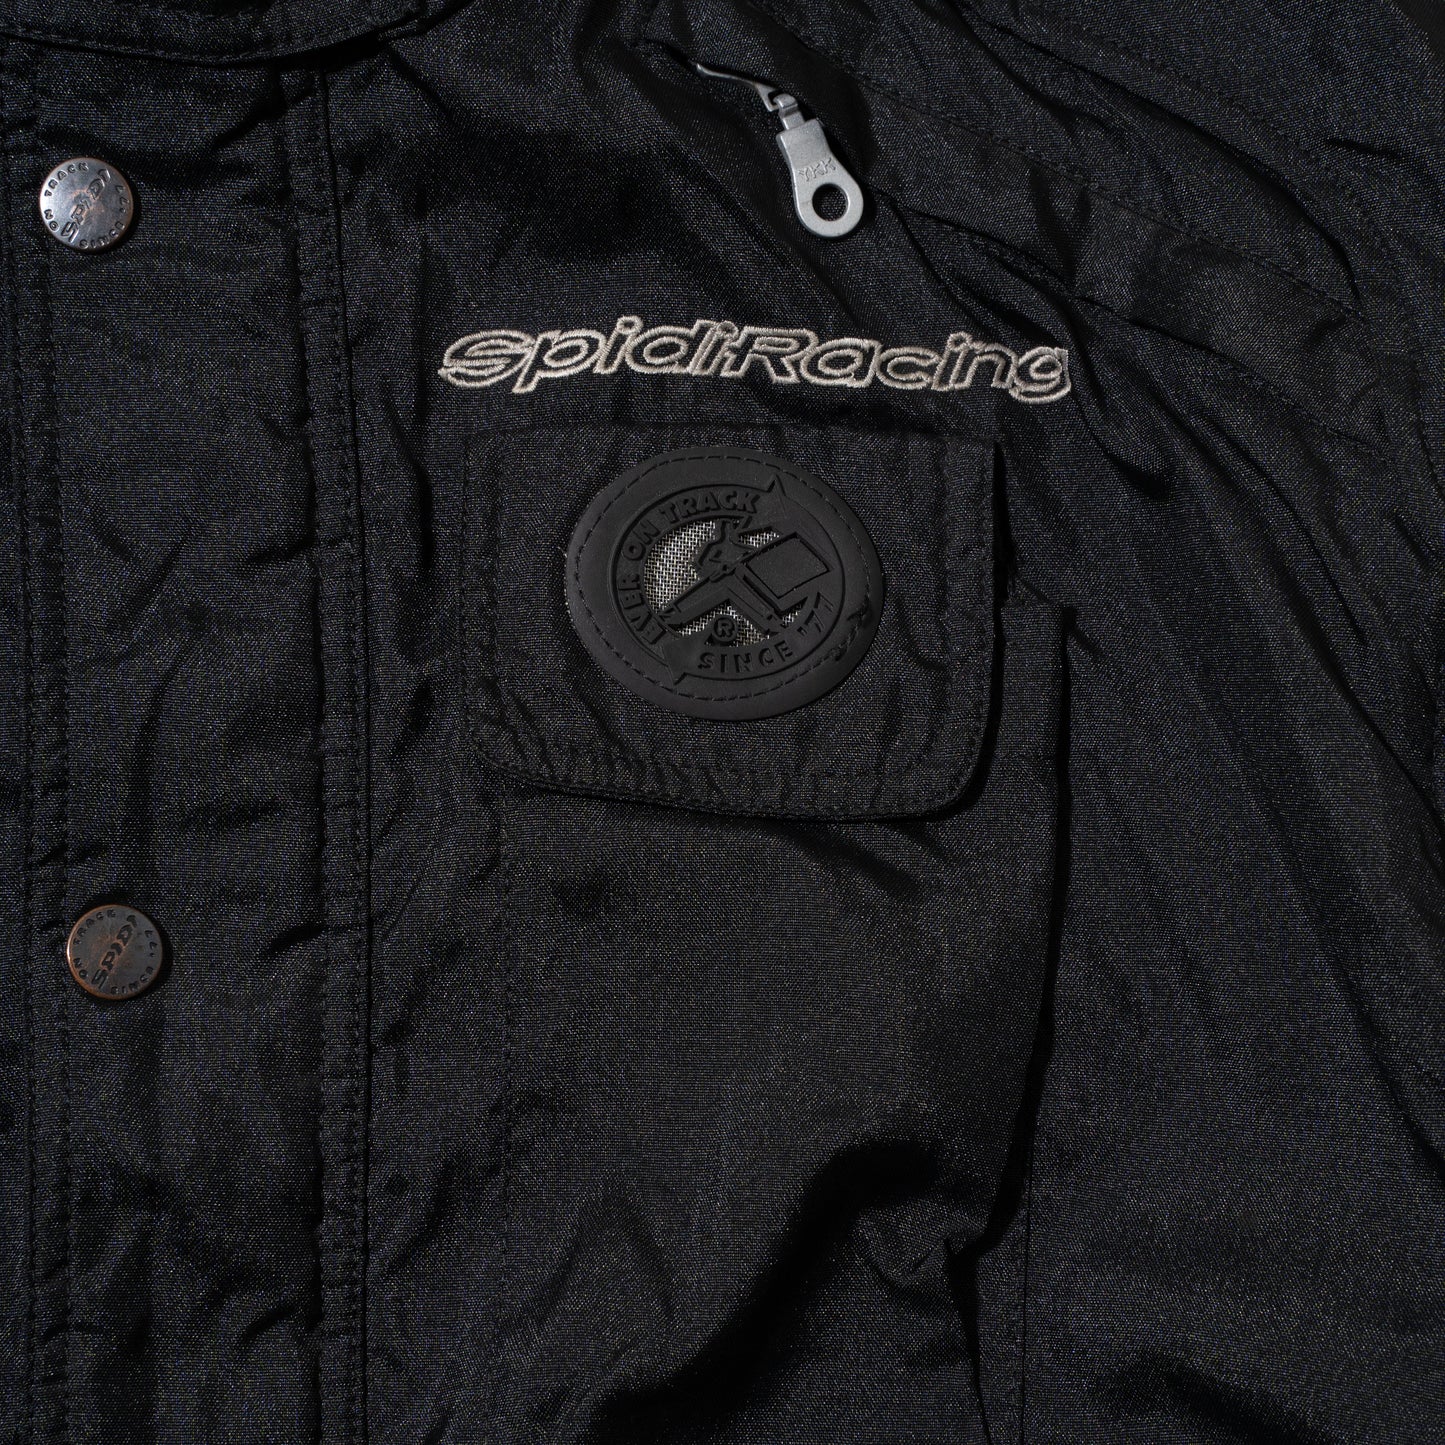 vintage spidiracing utility racing jacket